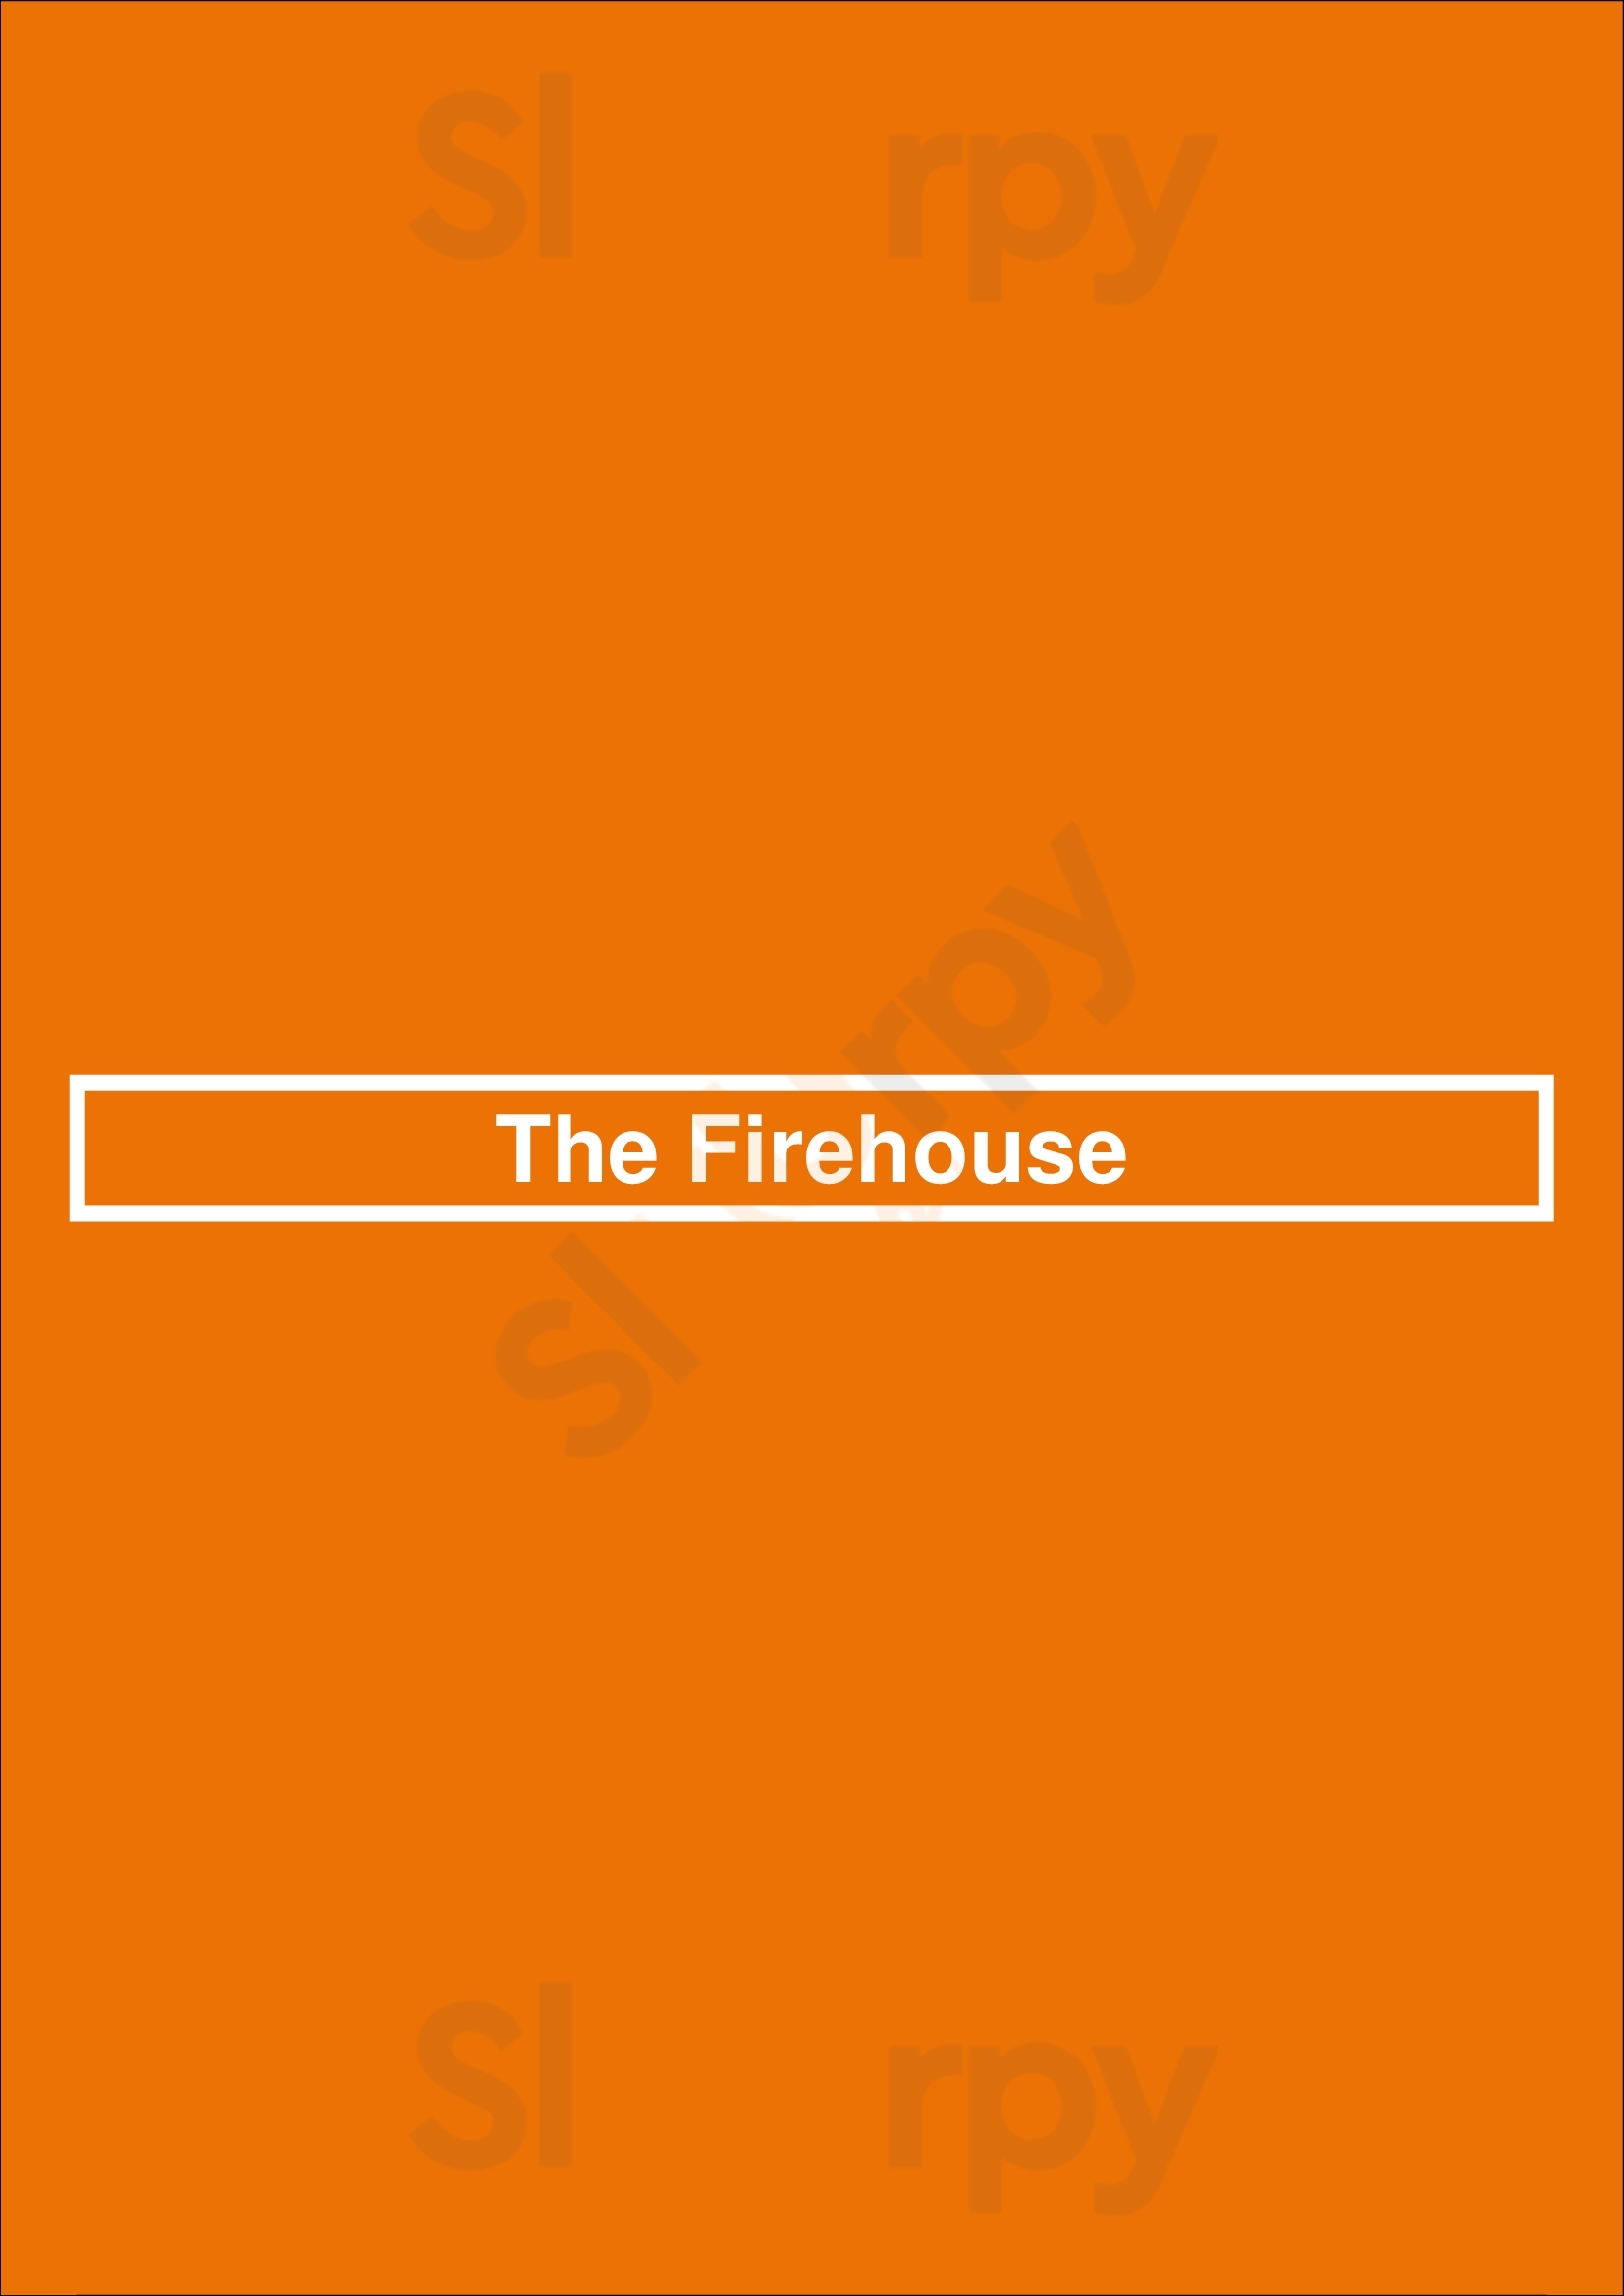 The Firehouse Restaurant Sacramento Menu - 1